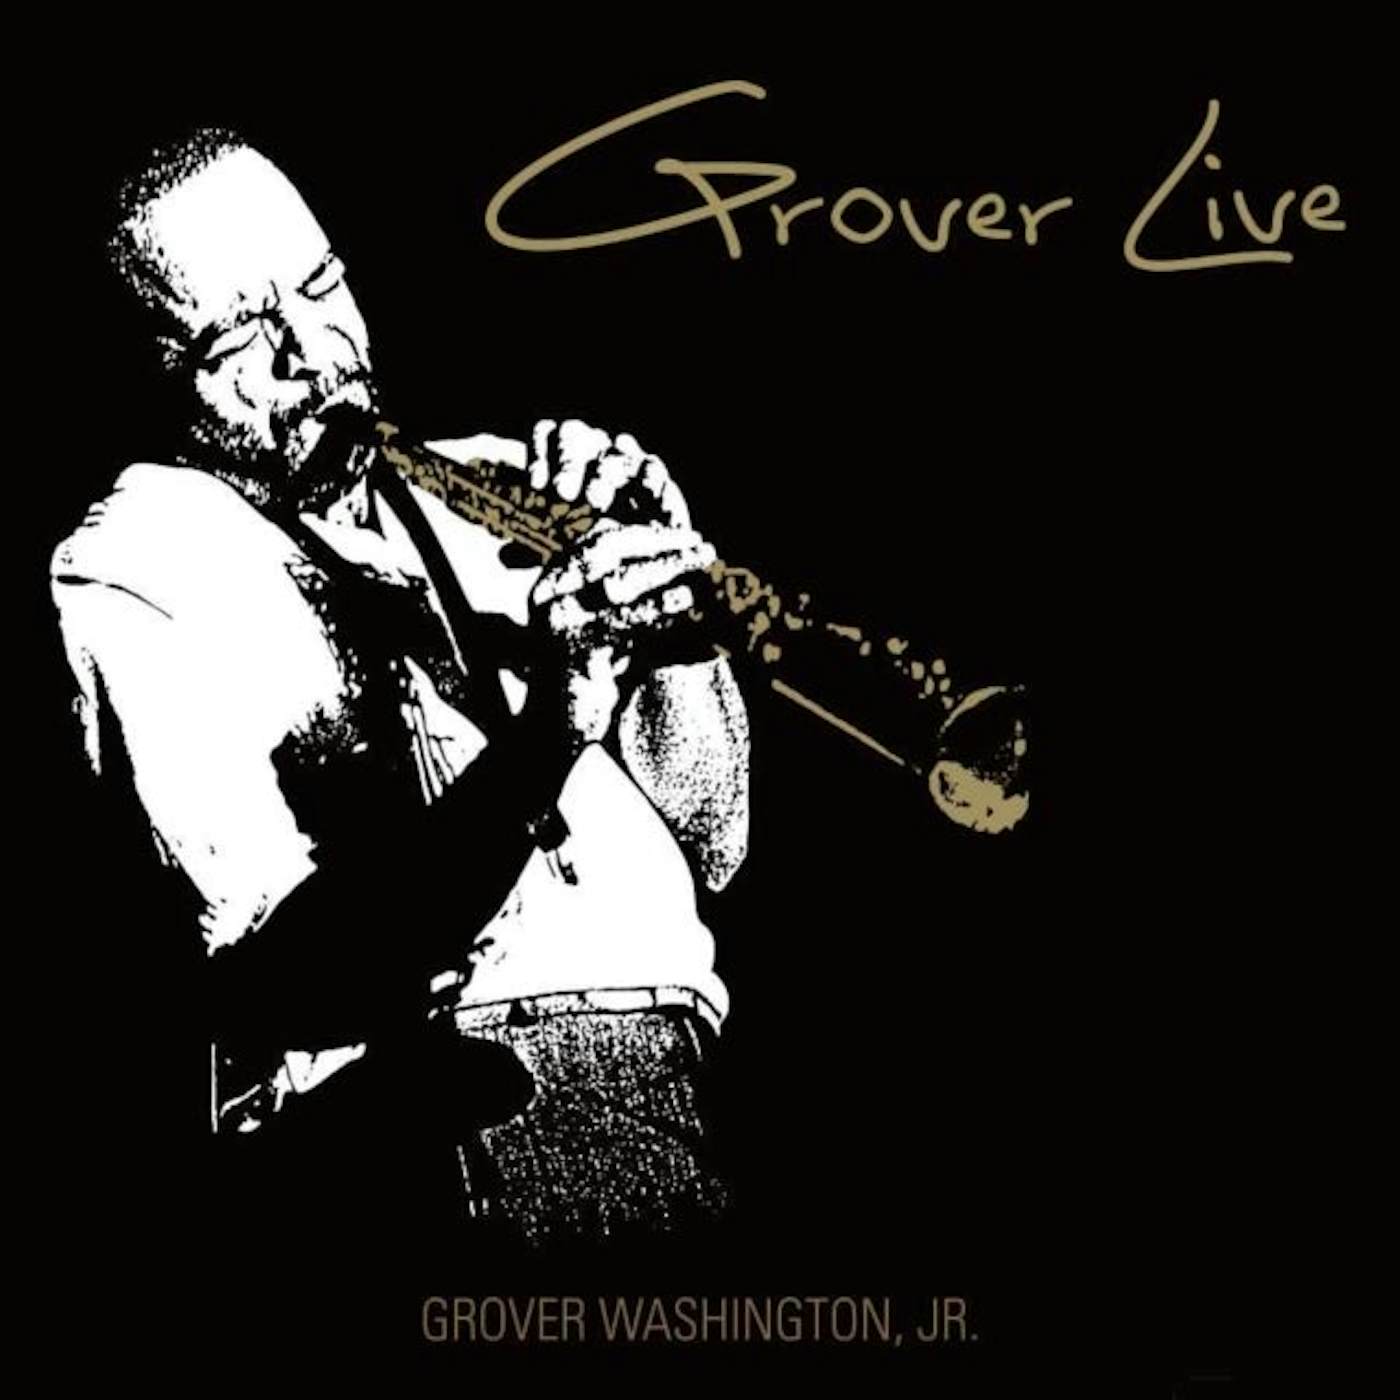 Grover Washington, Jr. LP Vinyl Record - Grover Live (Opaque Gold Vinyl) (Black Friday 20. 20. )